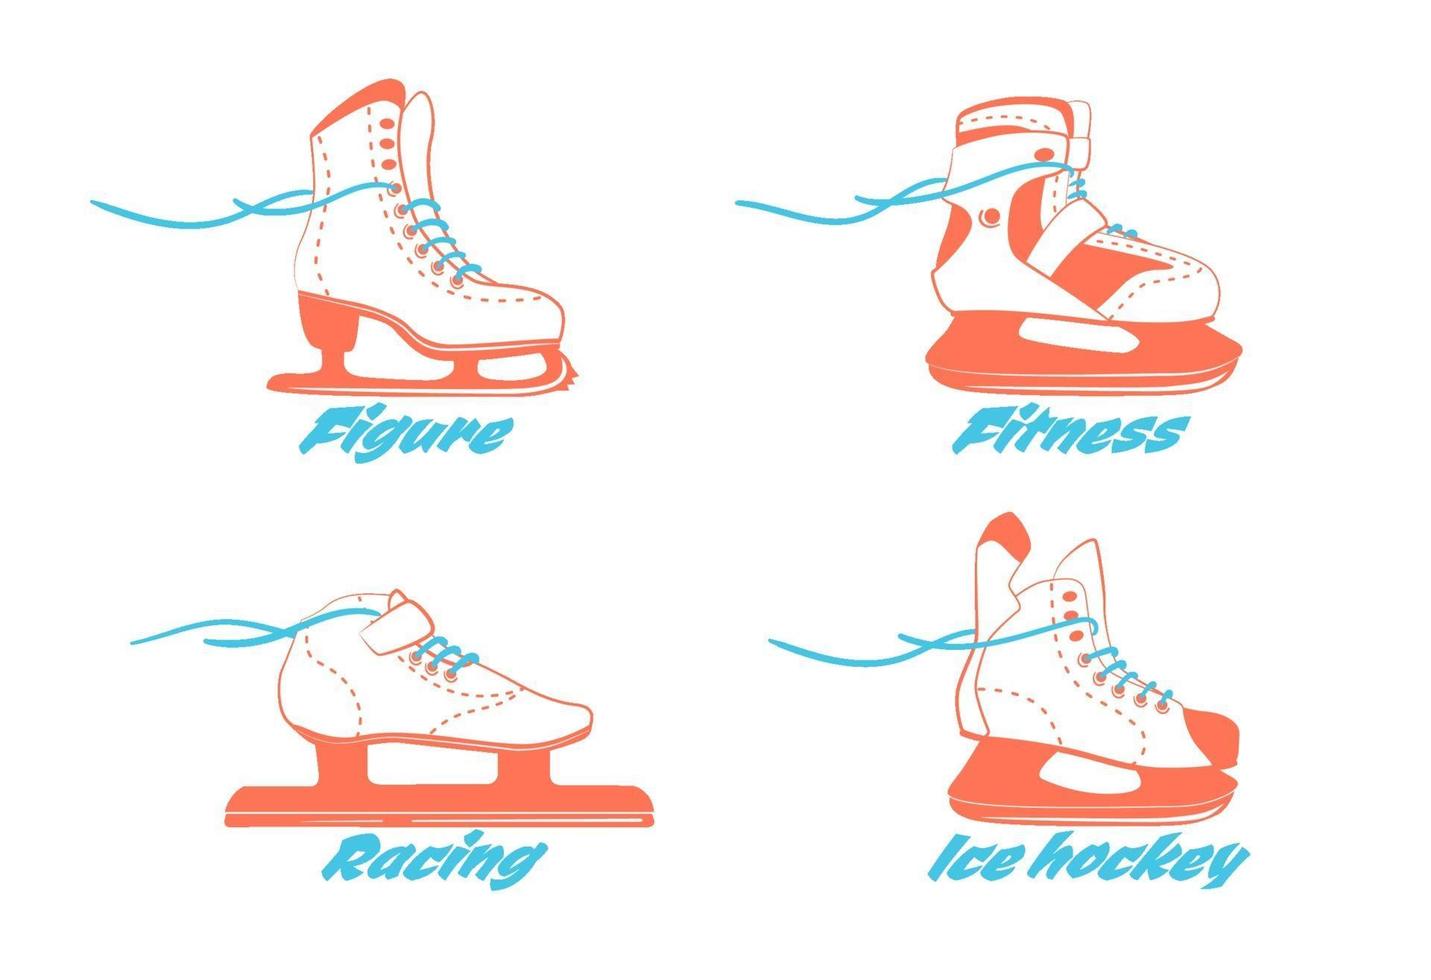 uppsättning olika skridskor - figur, fitness, racing, hockey. typ av skridskor. vinter sport utrustning logotyp i vintage färger. vektorillustration isolerad på vit bakgrund. vektor